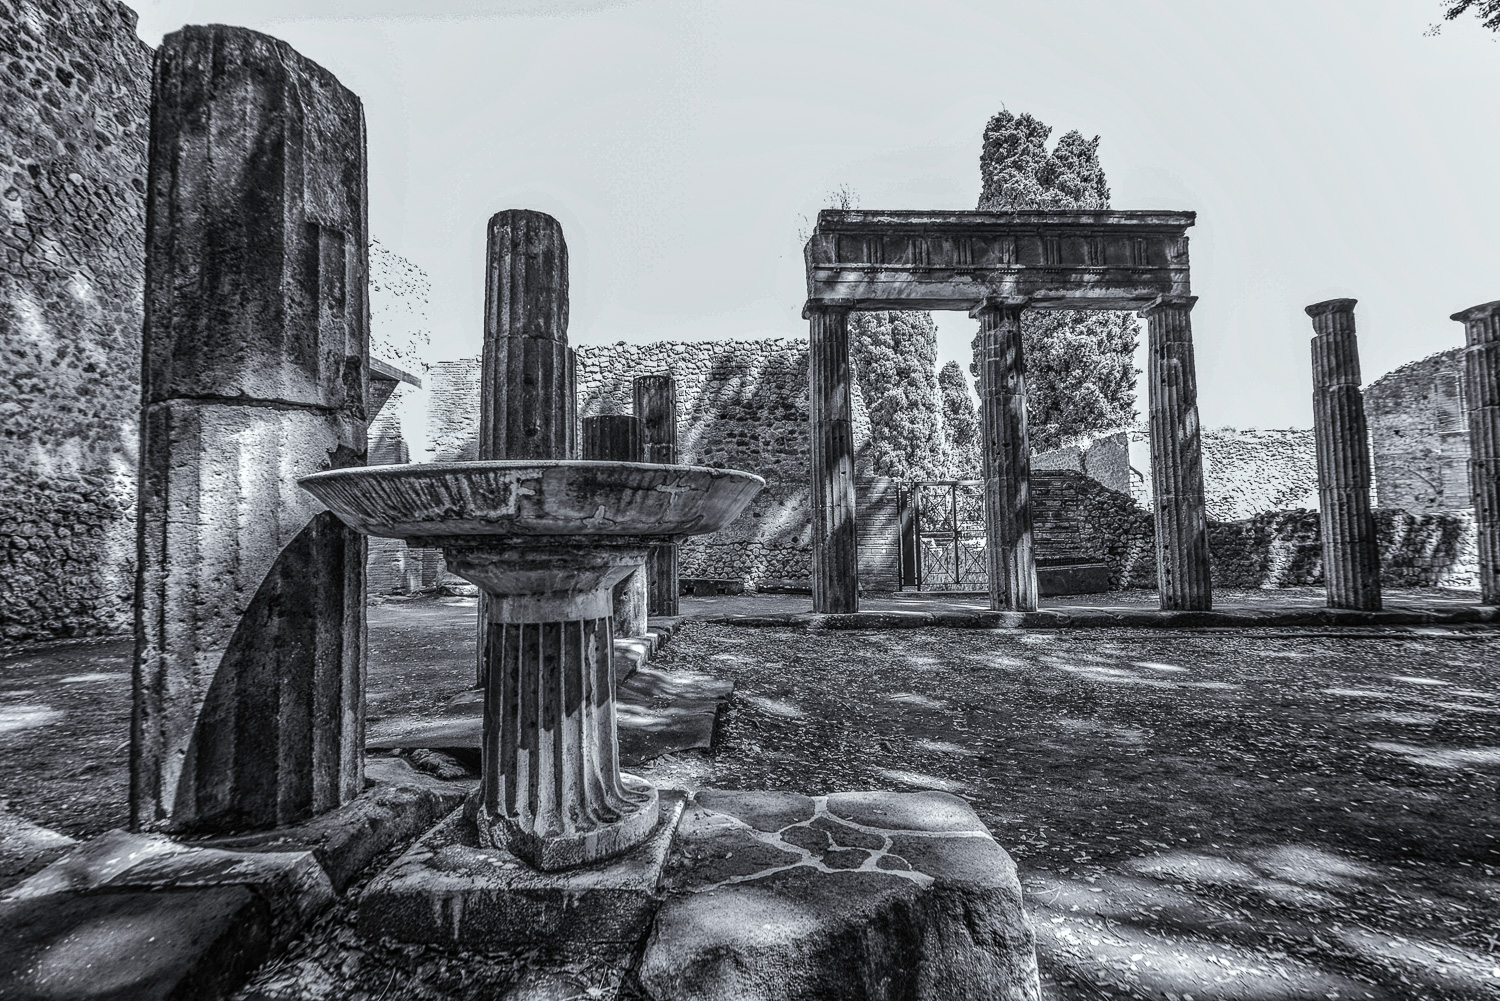 Pompeis ruins